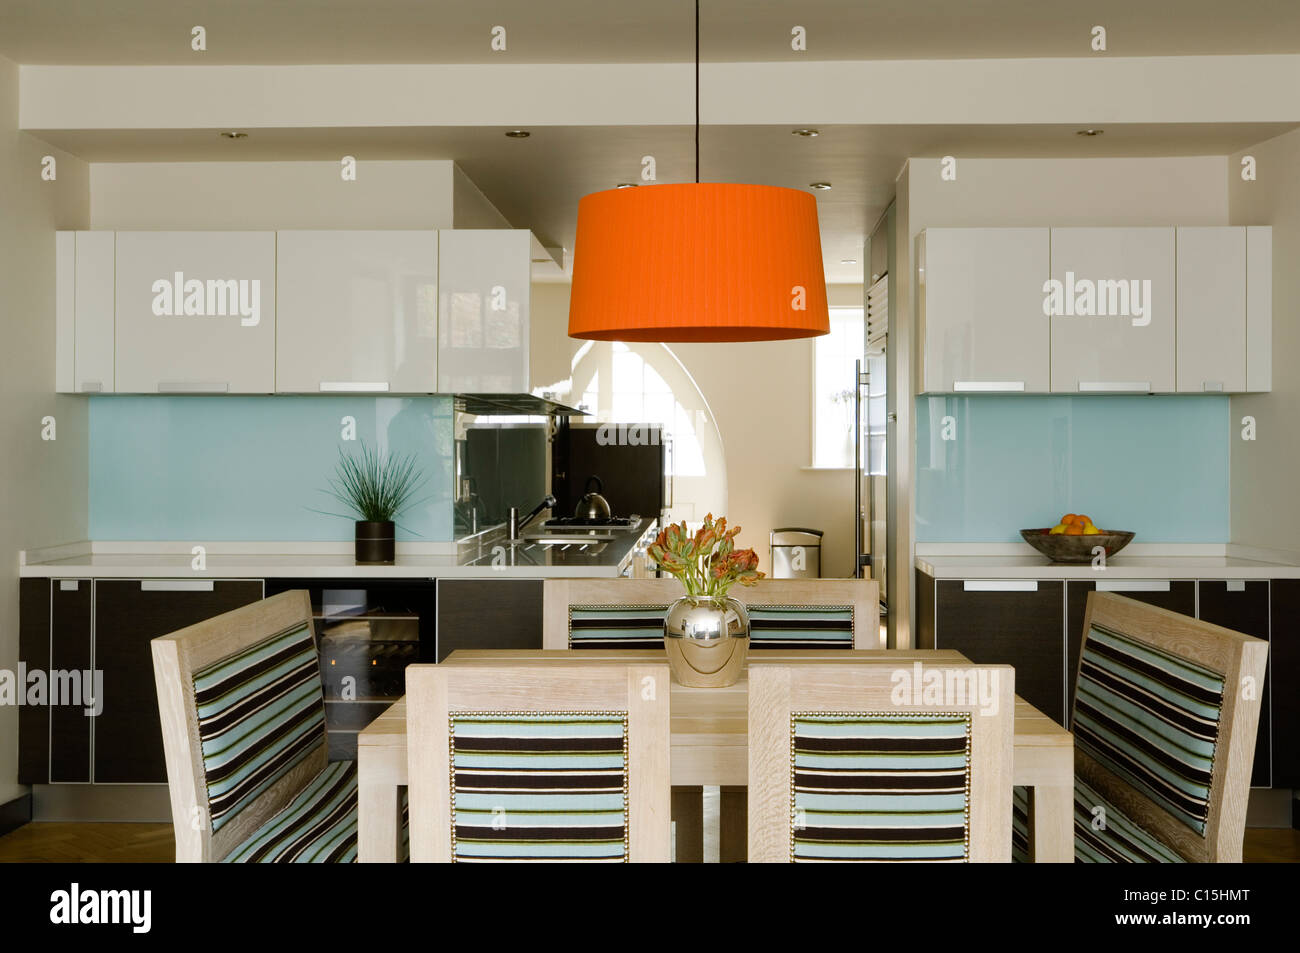 Große orange Lampenschirm über dem Esstisch in offene Küche mit gestreiften Stühle Stockfoto